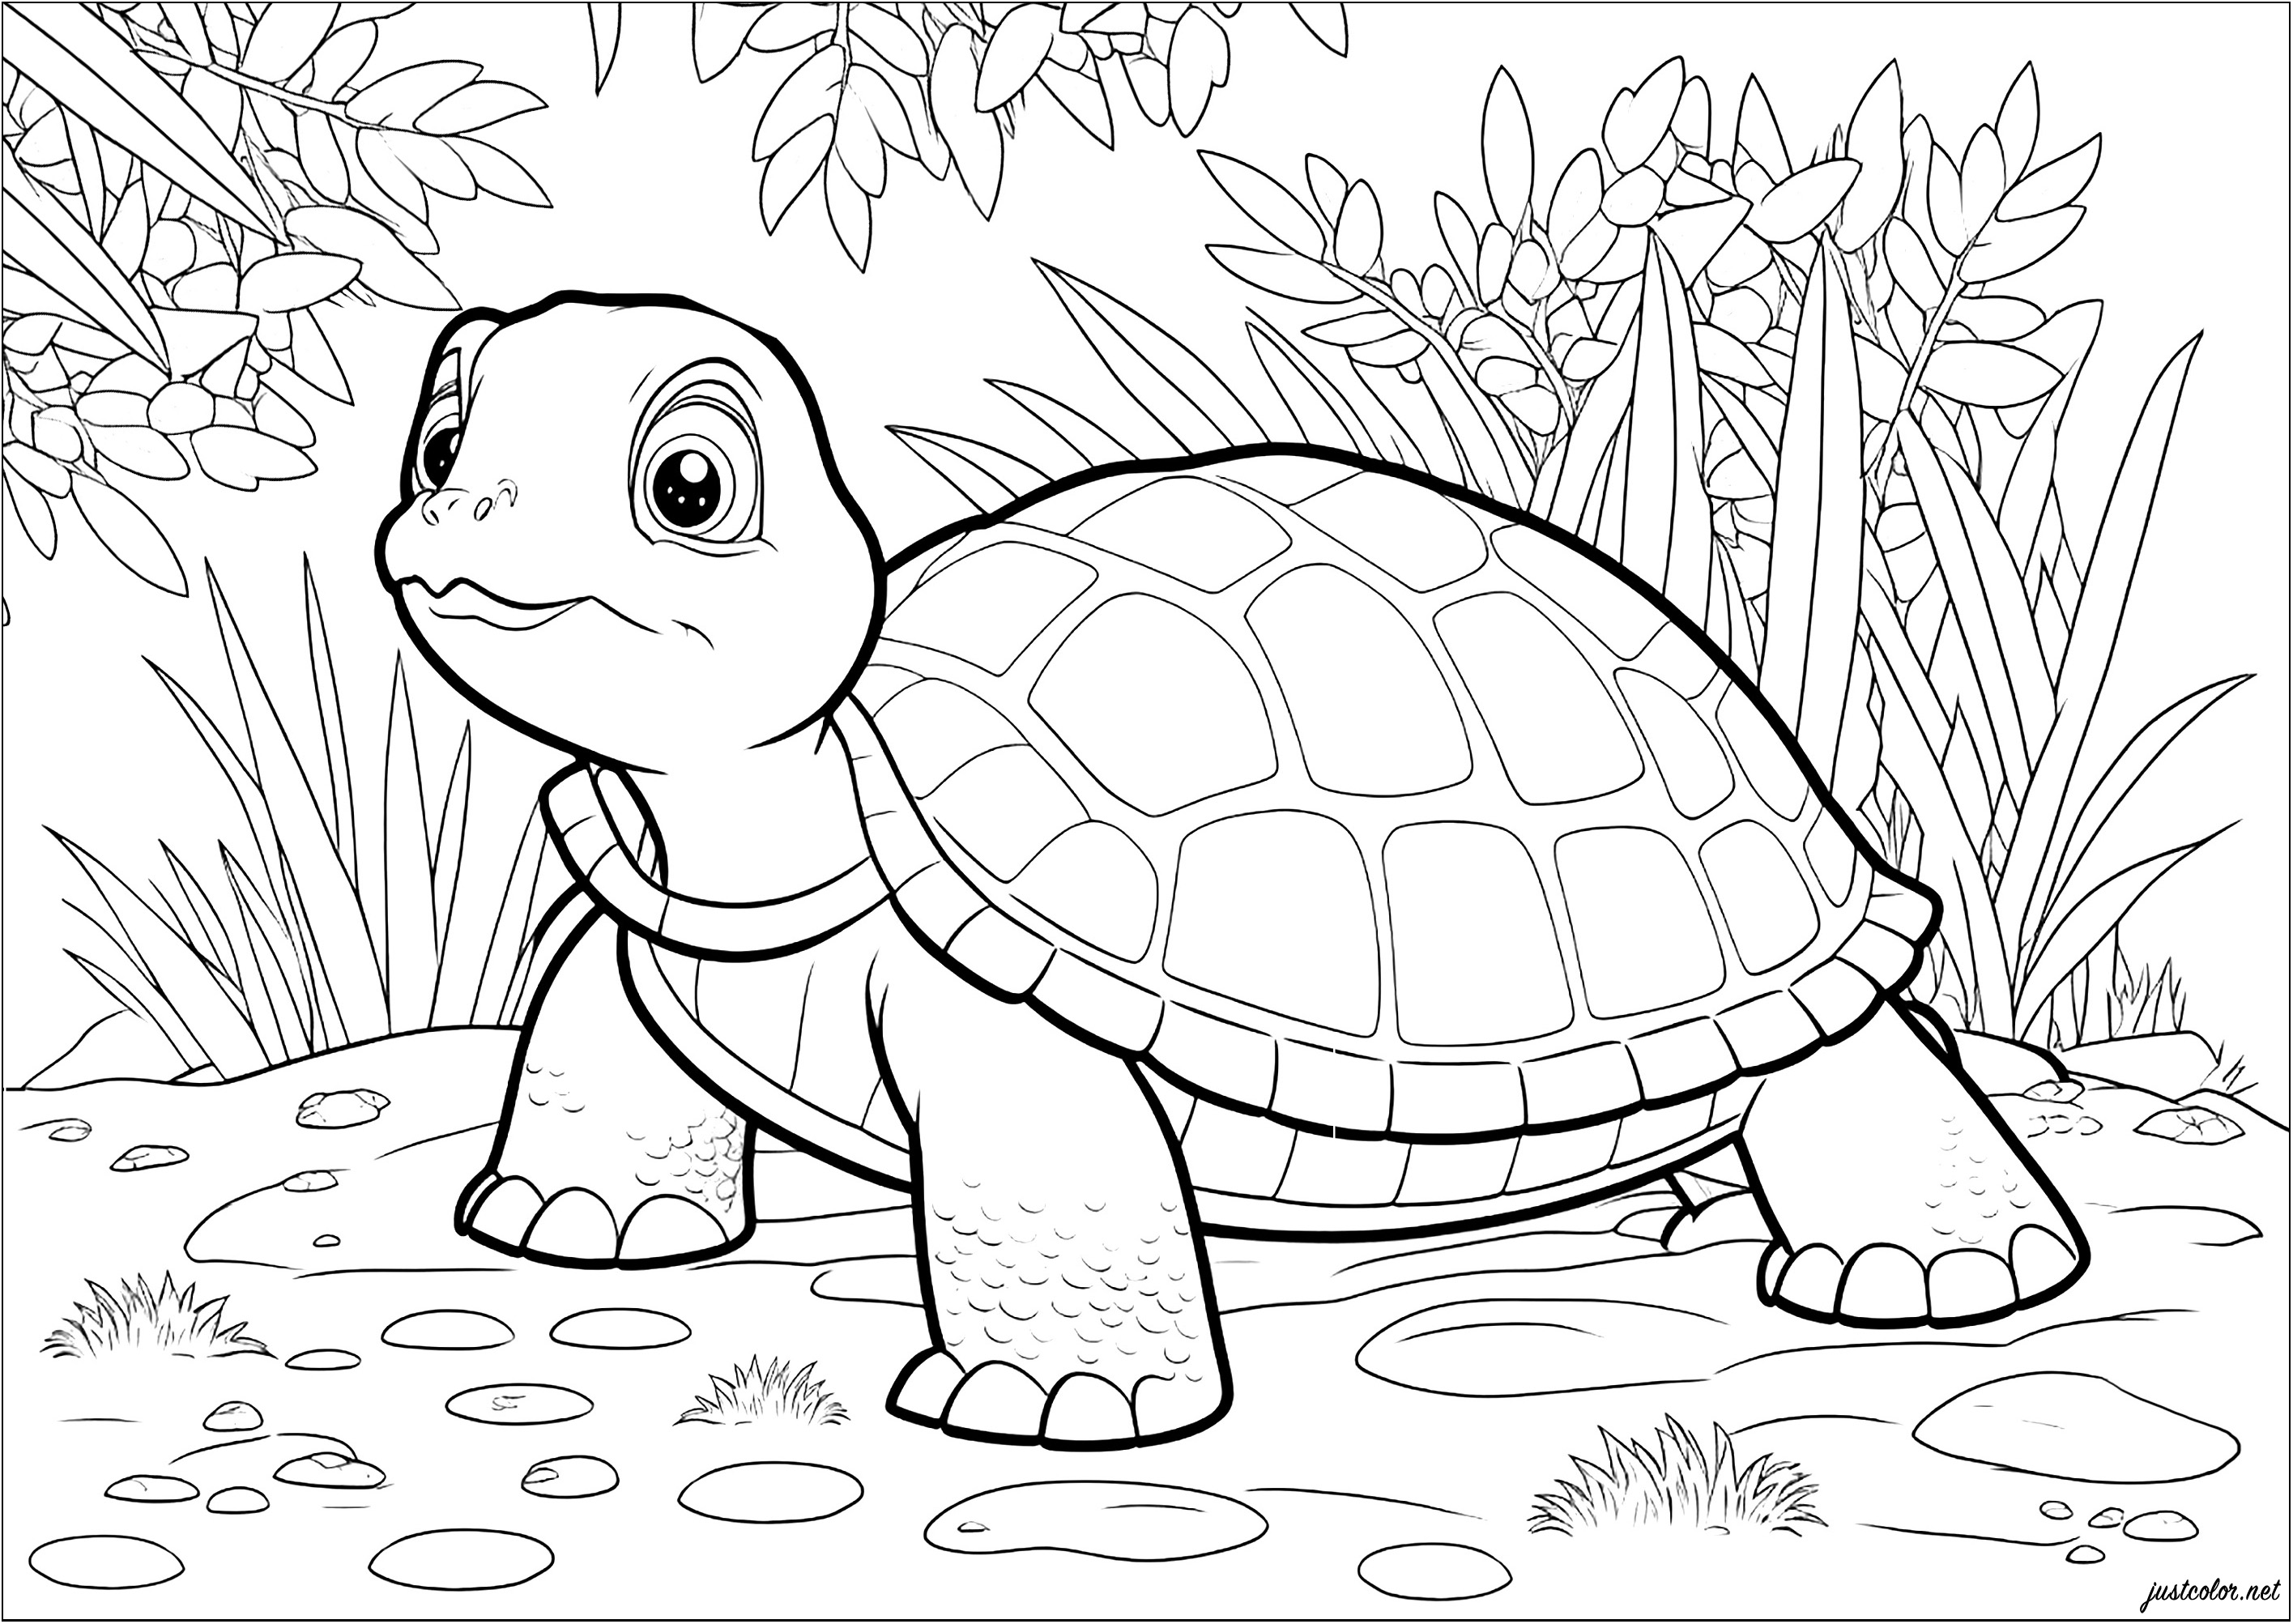 Una página para colorear muy chula con una tortuga y un montón de hojas detrás. Únete a la lenta y constante tortuga en sus aventuras en esta divertida página para colorear.